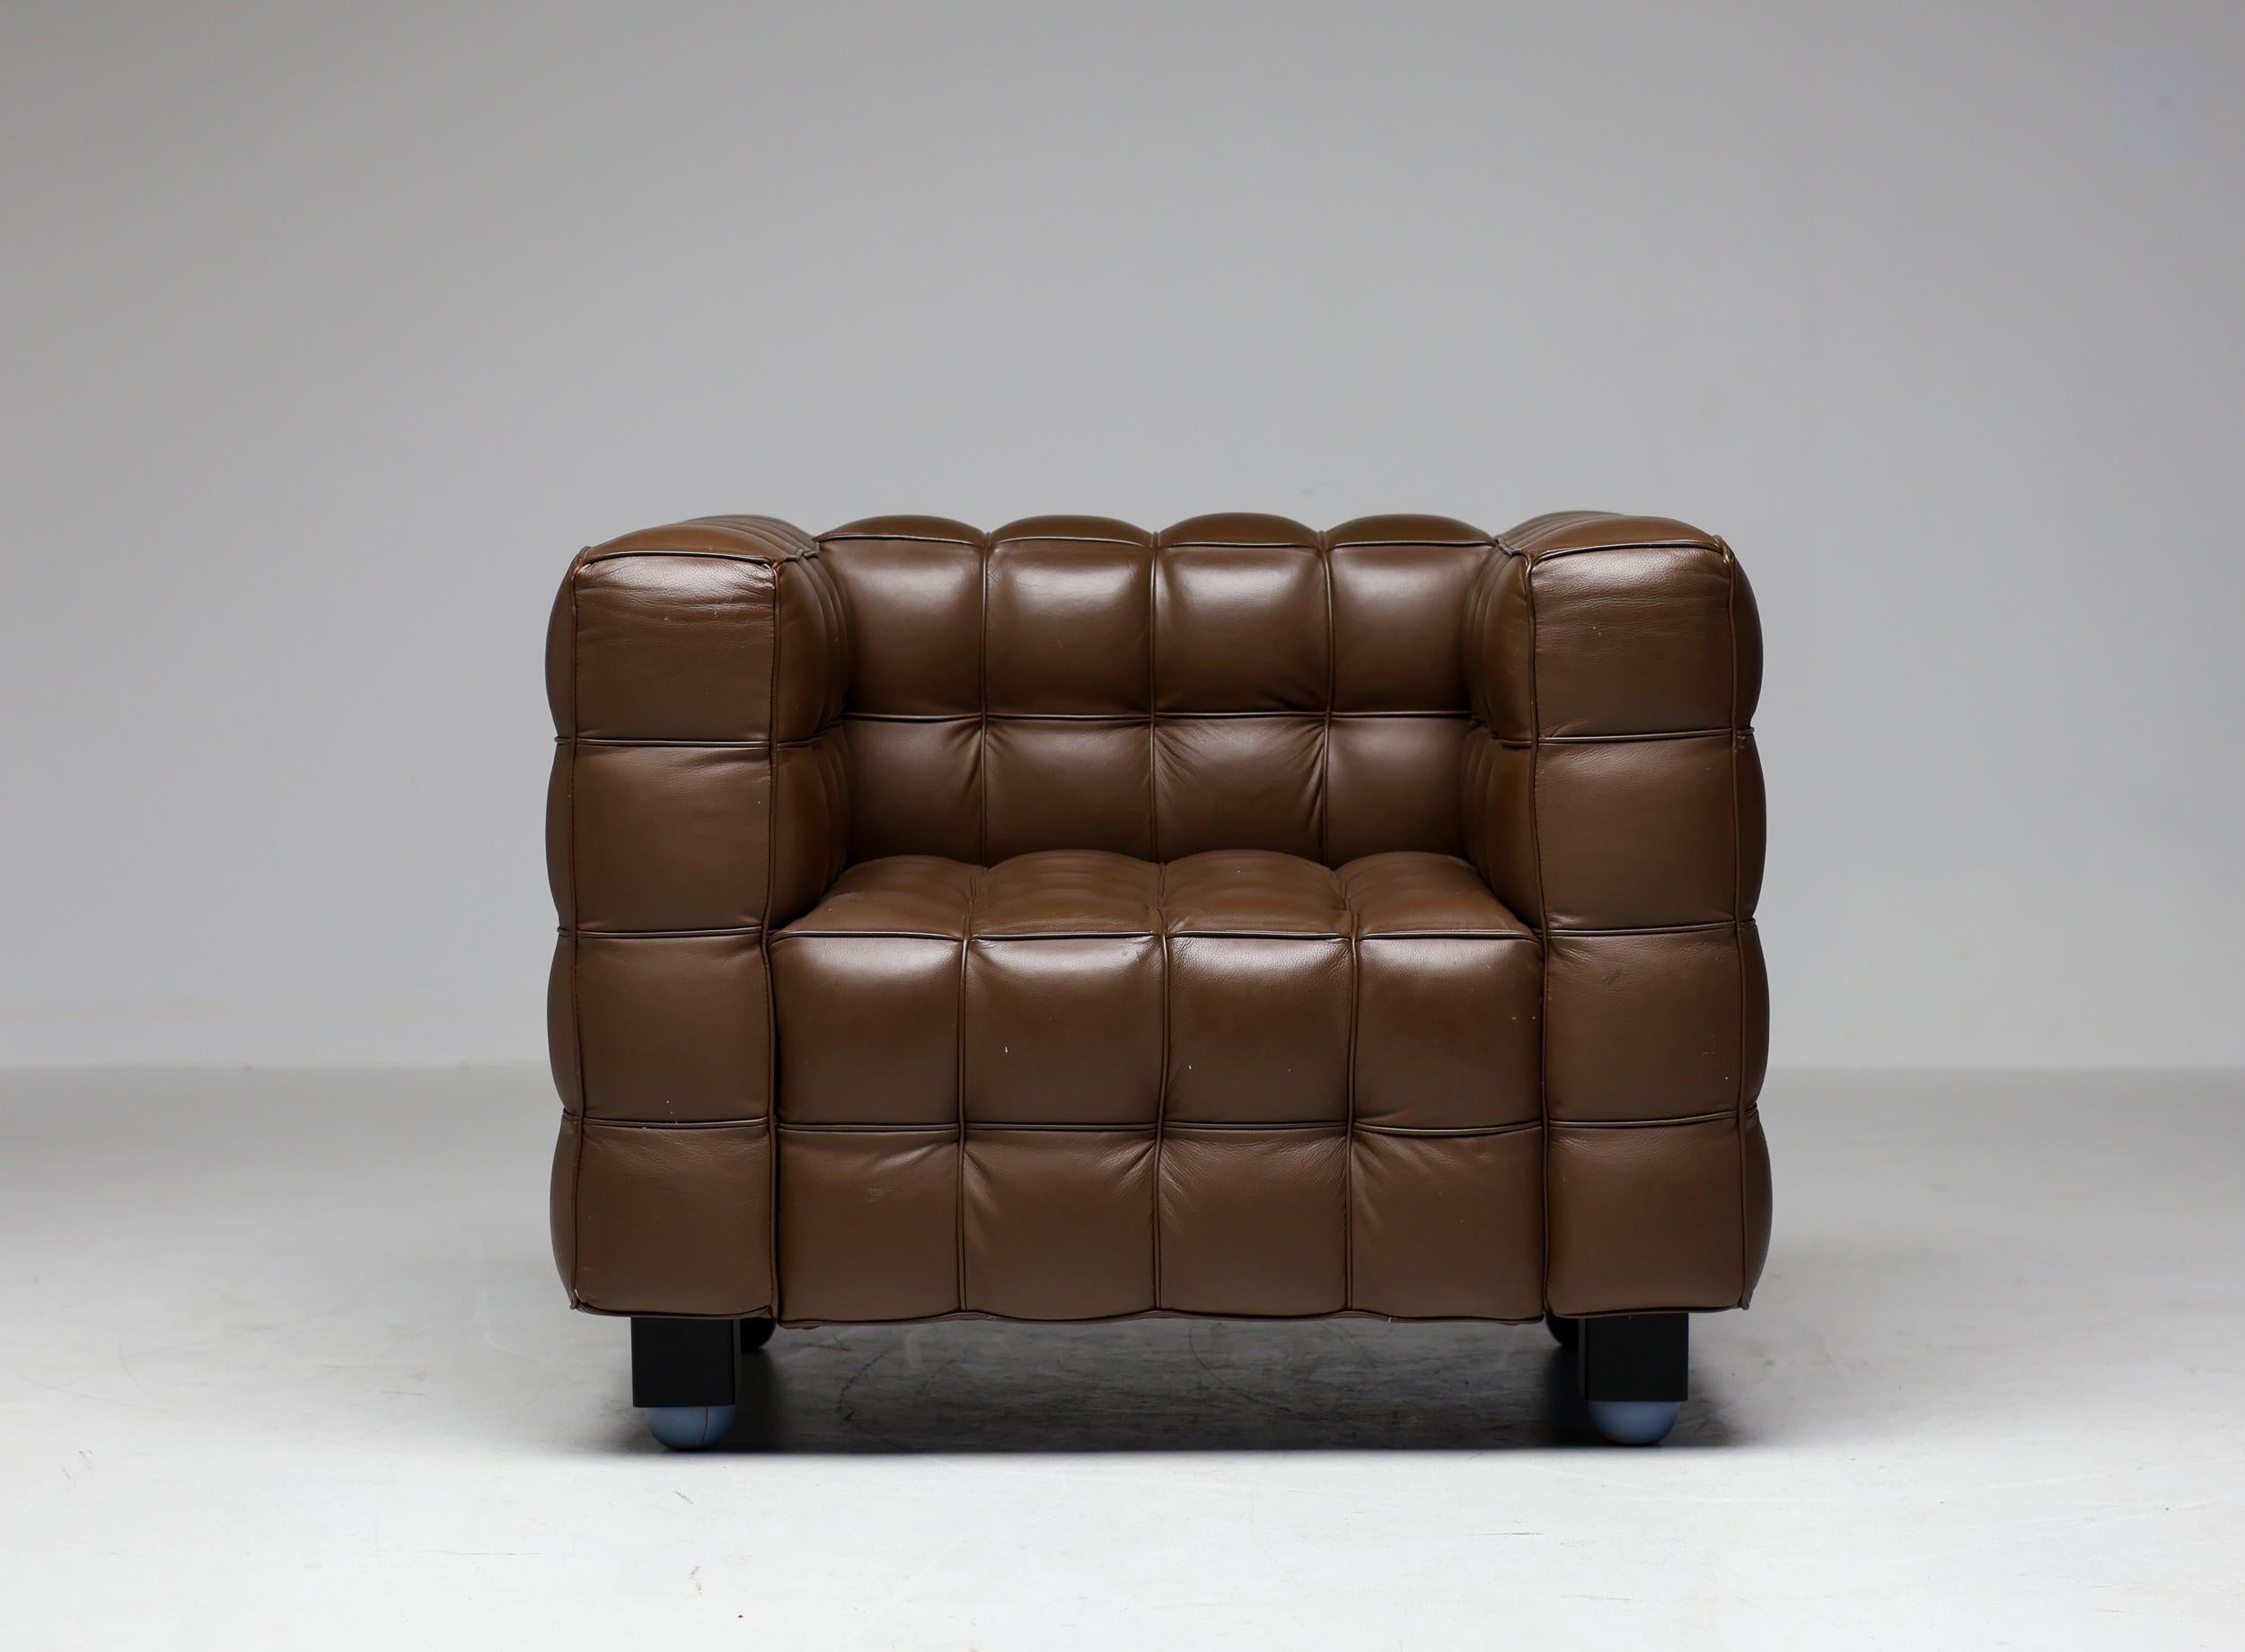 Schönes schokoladenbraunes Kubus-Ledersofa 8020 und passender Sessel, entworfen von Josef Hoffman und hergestellt von Alivar. Dieses Set wurde liebevoll gepflegt und befindet sich in einem wunderbaren Originalzustand.
Der Katalog des Alivar Museums,